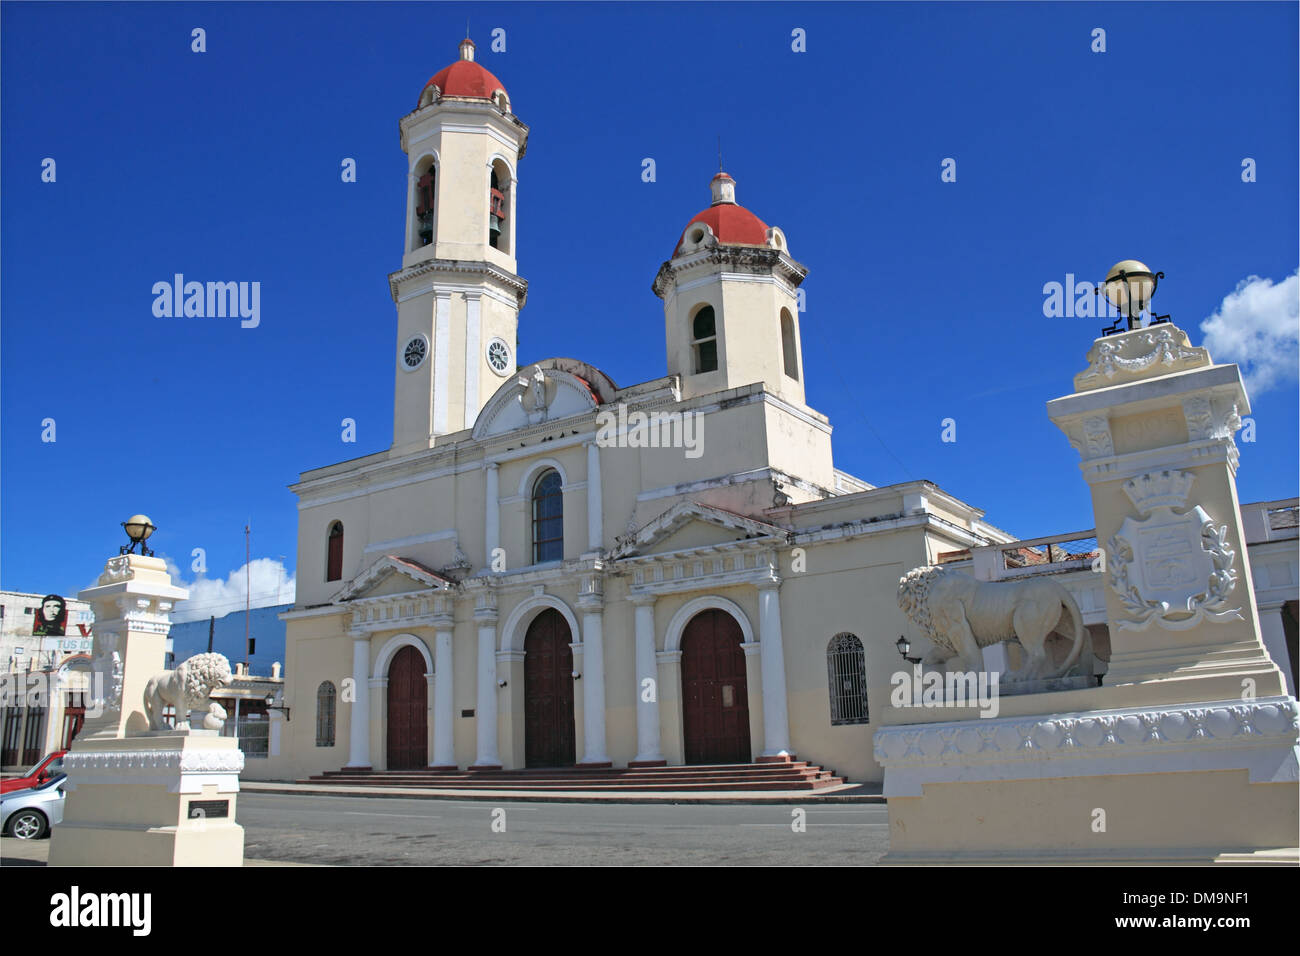 Catedral de la Purísima Concepción, Parque José Martí, Cienfuegos, Cienfuegos province, à Cuba, mer des Caraïbes, l'Amérique centrale Banque D'Images